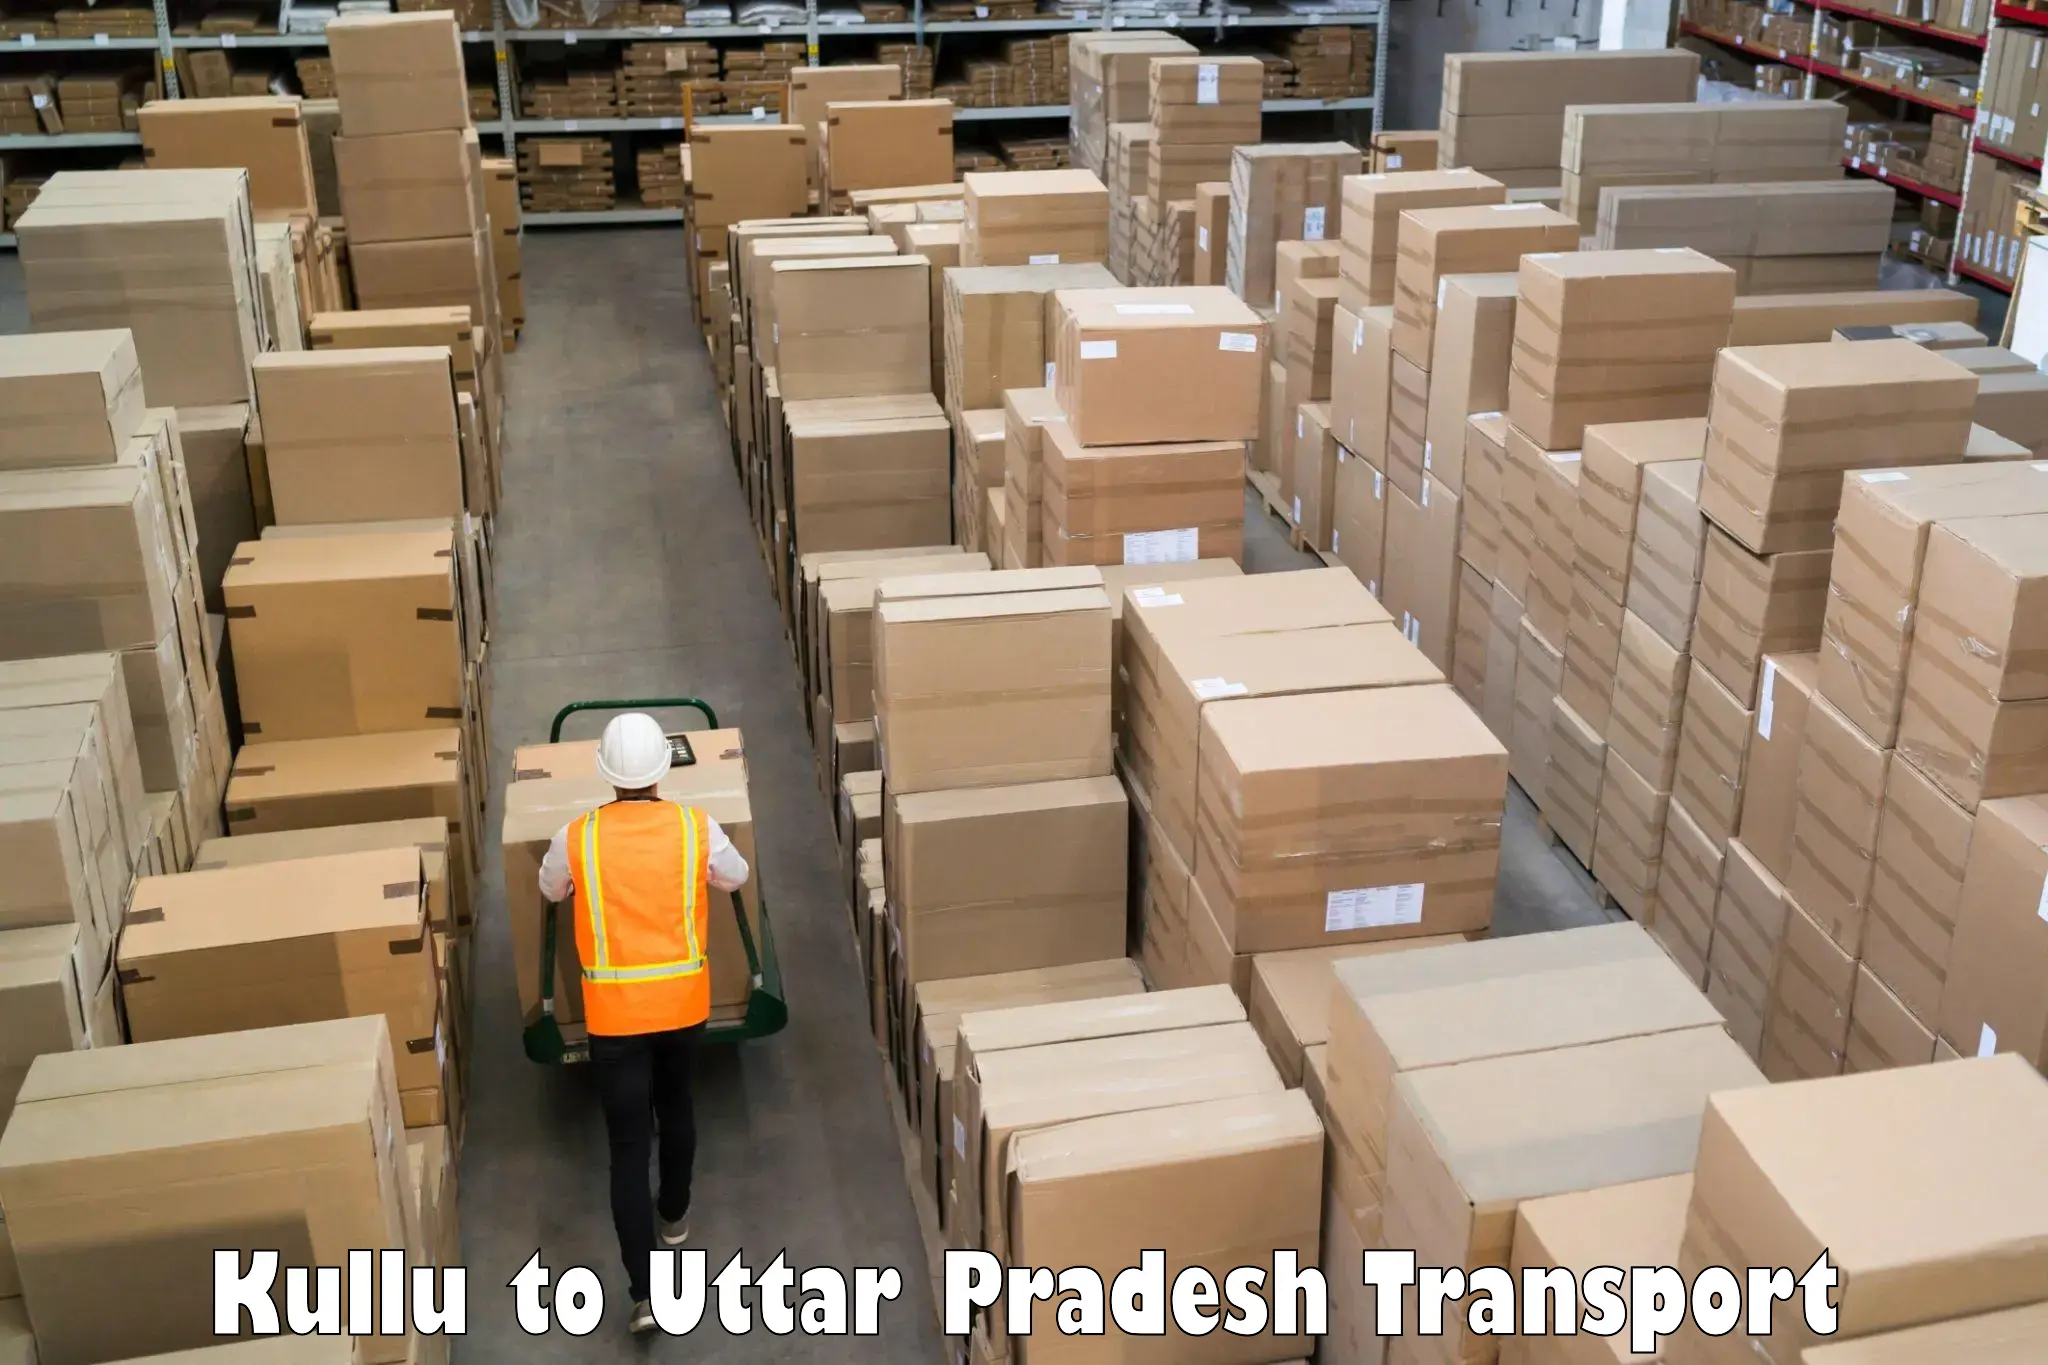 Furniture transport service Kullu to Behat